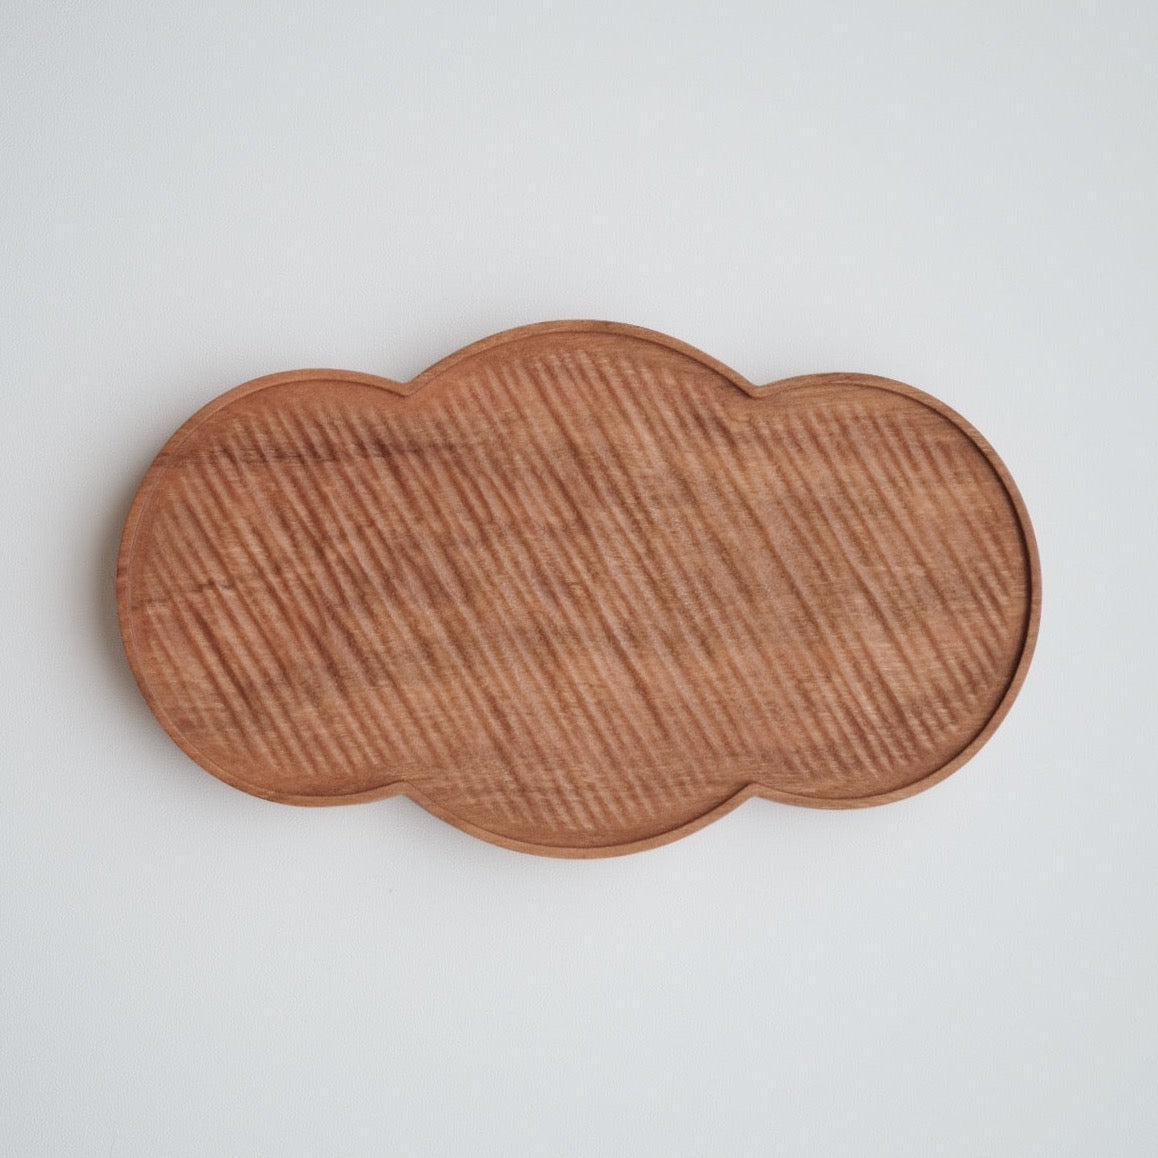 Cherry Wood Dessert Plate - Cloud